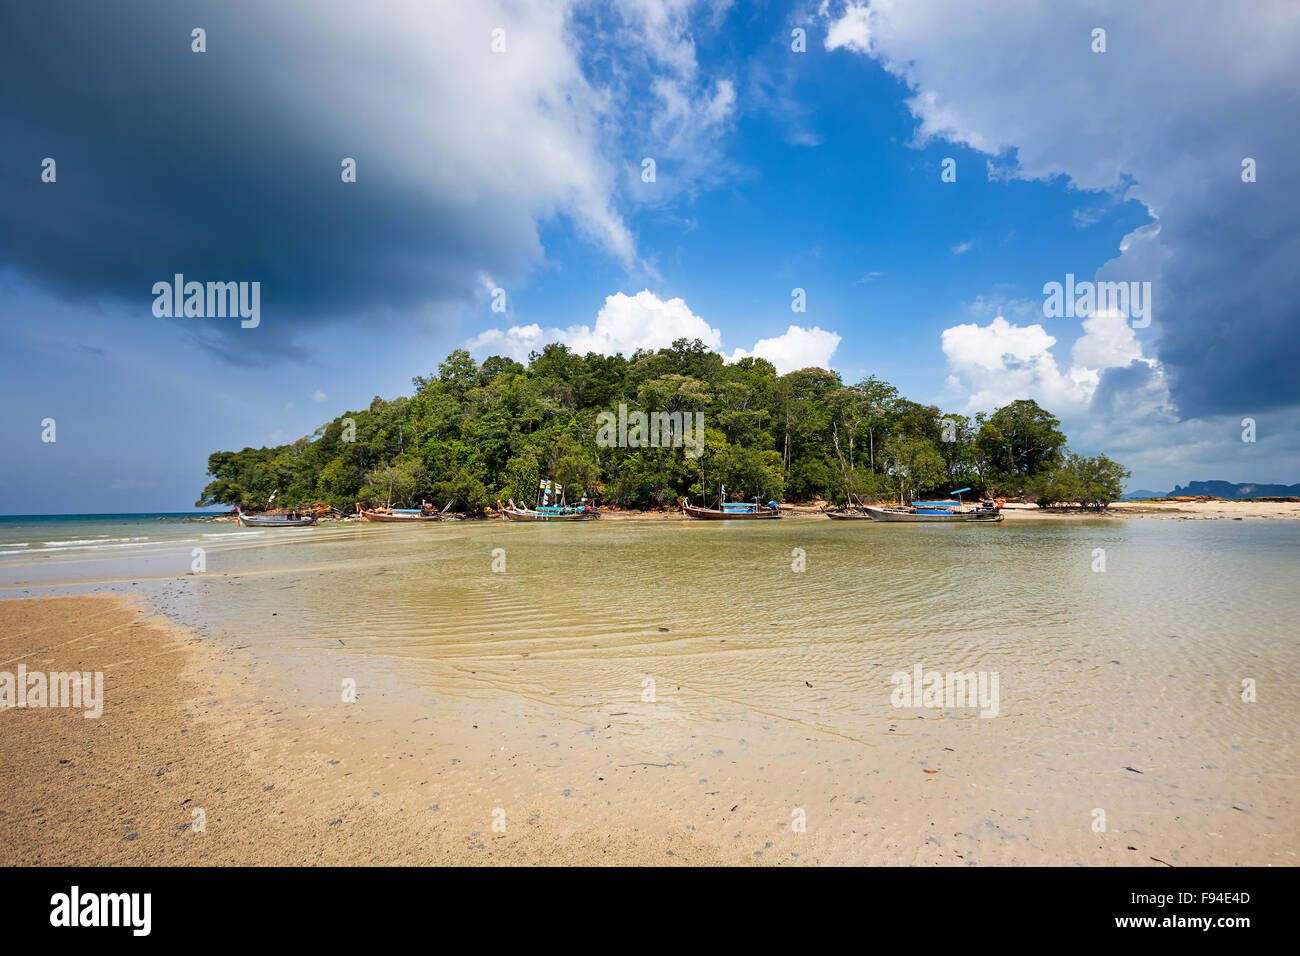 Petite île juste à côté de la plage de Klong Muang. Province de Krabi, Thaïlande. Banque D'Images